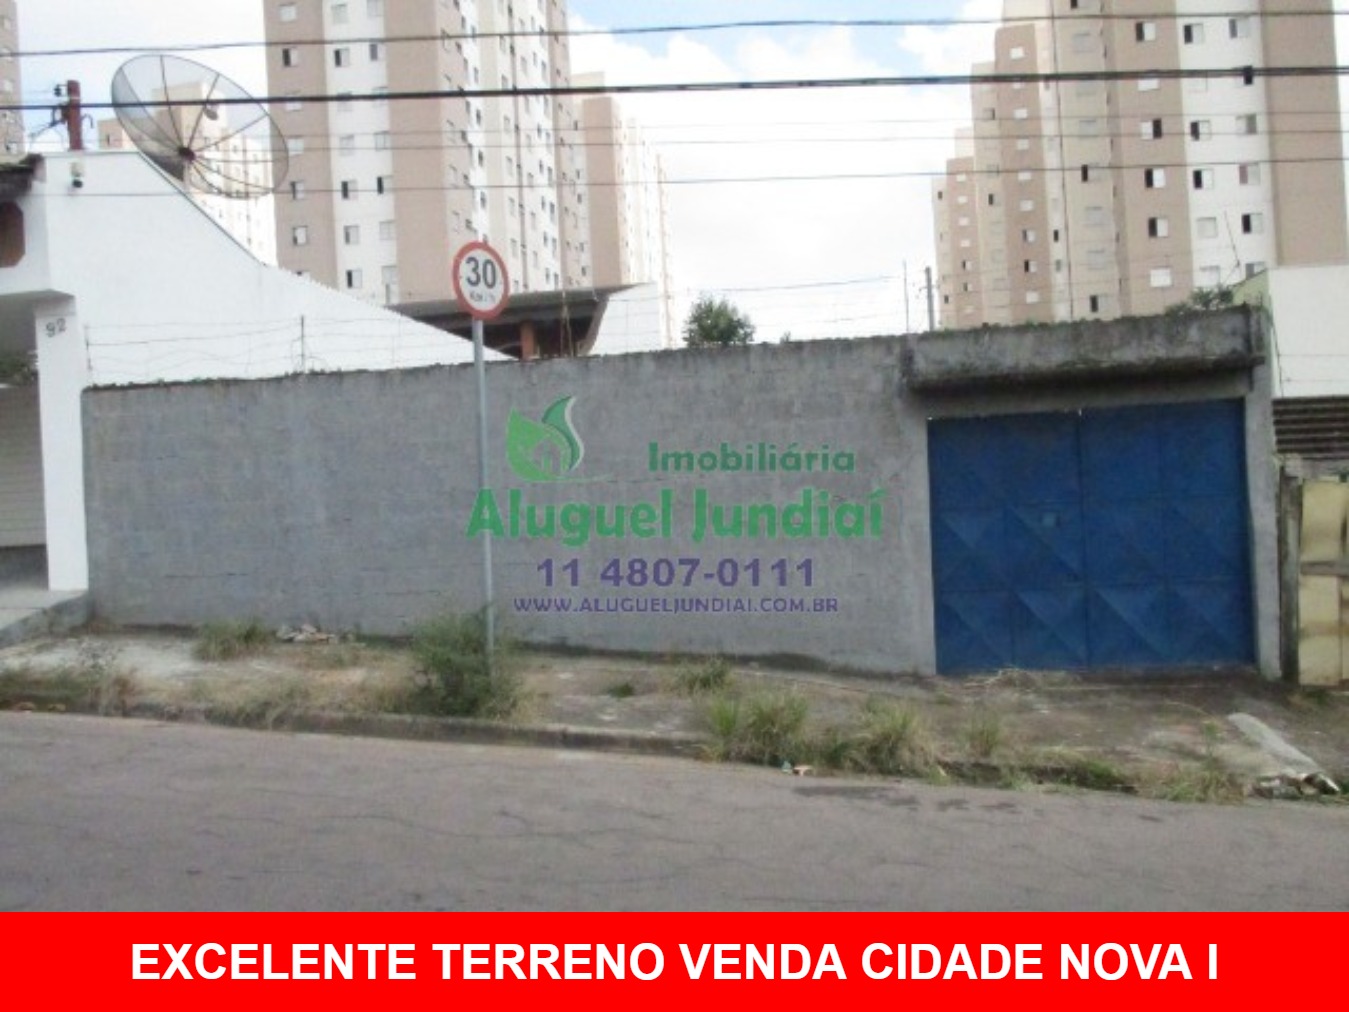 Excelente terreno a VENDA em Jundiaí no bairro CIDADE NOVA I, 310 m² plano, todo murado com excelente localização. Agende sua visita sem compromisso!